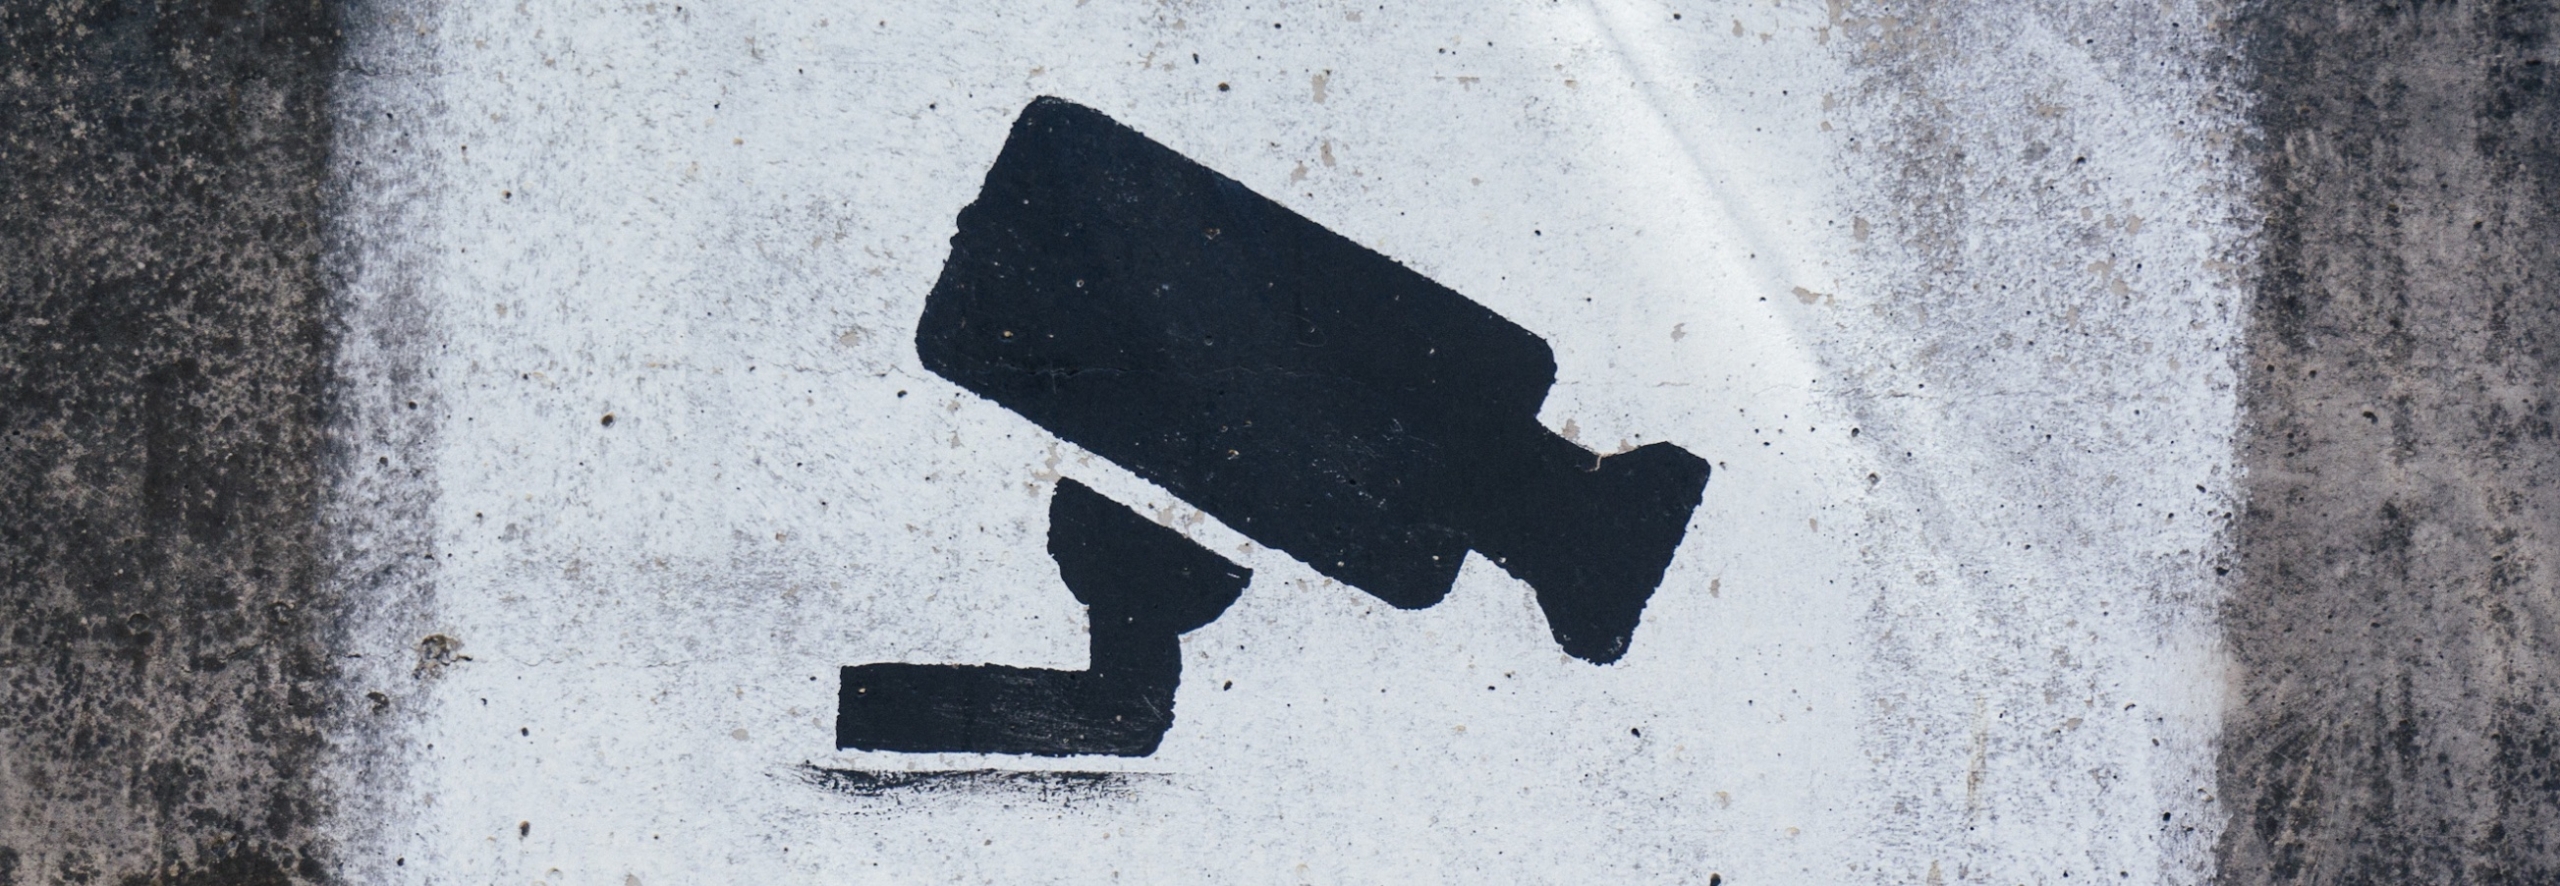 Количество выписывающих штрафы видеокамер увеличится в разы — насколько тотальной станет слежка